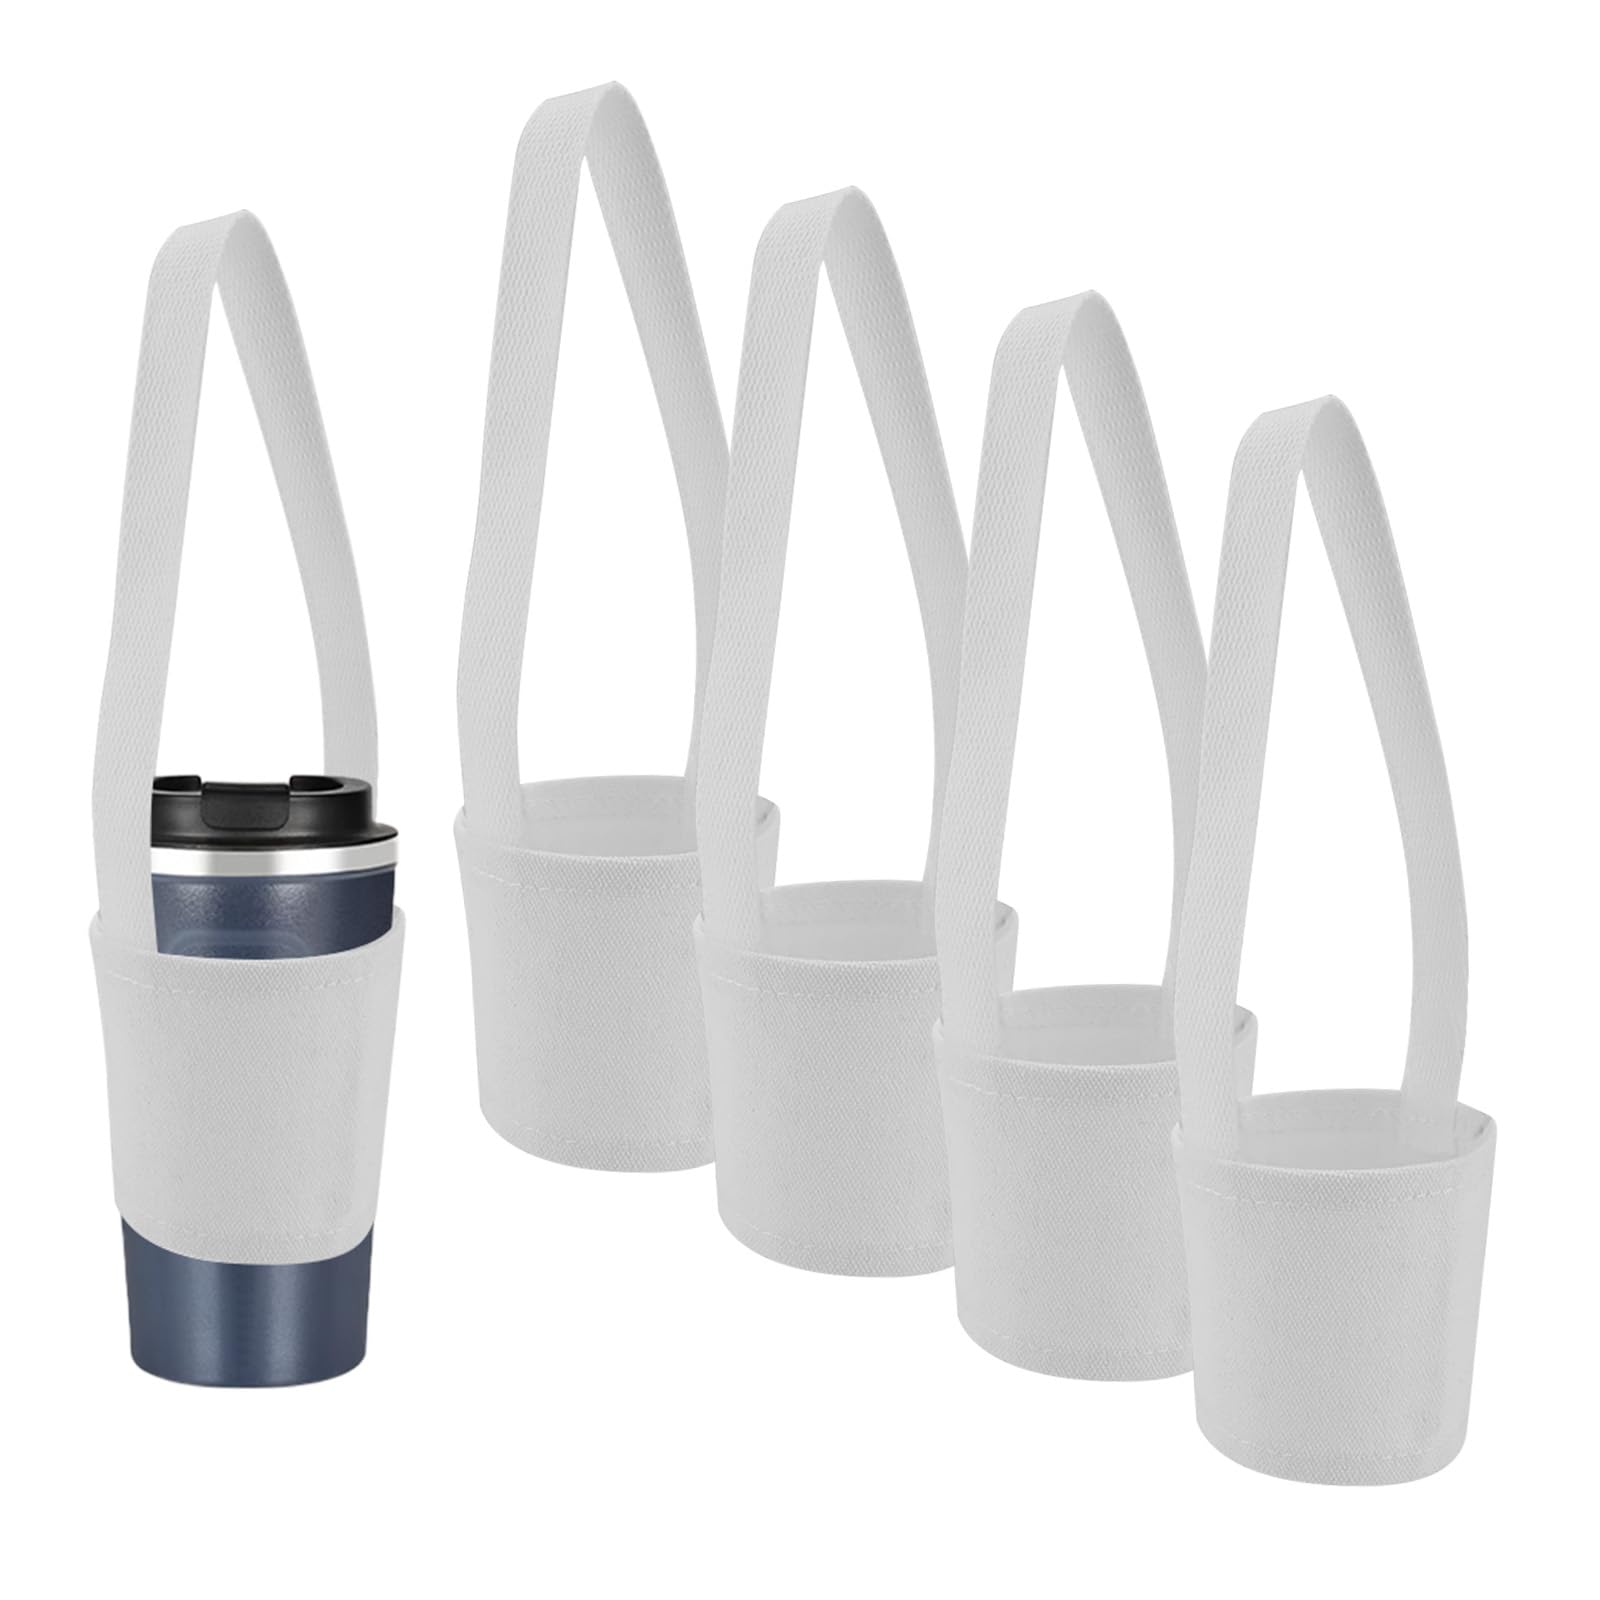 SRJQXH 5 Stücke Cupholder, Tragbar Cup Holder, Getränkehalter für Kaffeetassen und Flaschen, Passend für Thermobecher Kaffee und Trinkflaschen (Weiß) von SRJQXH